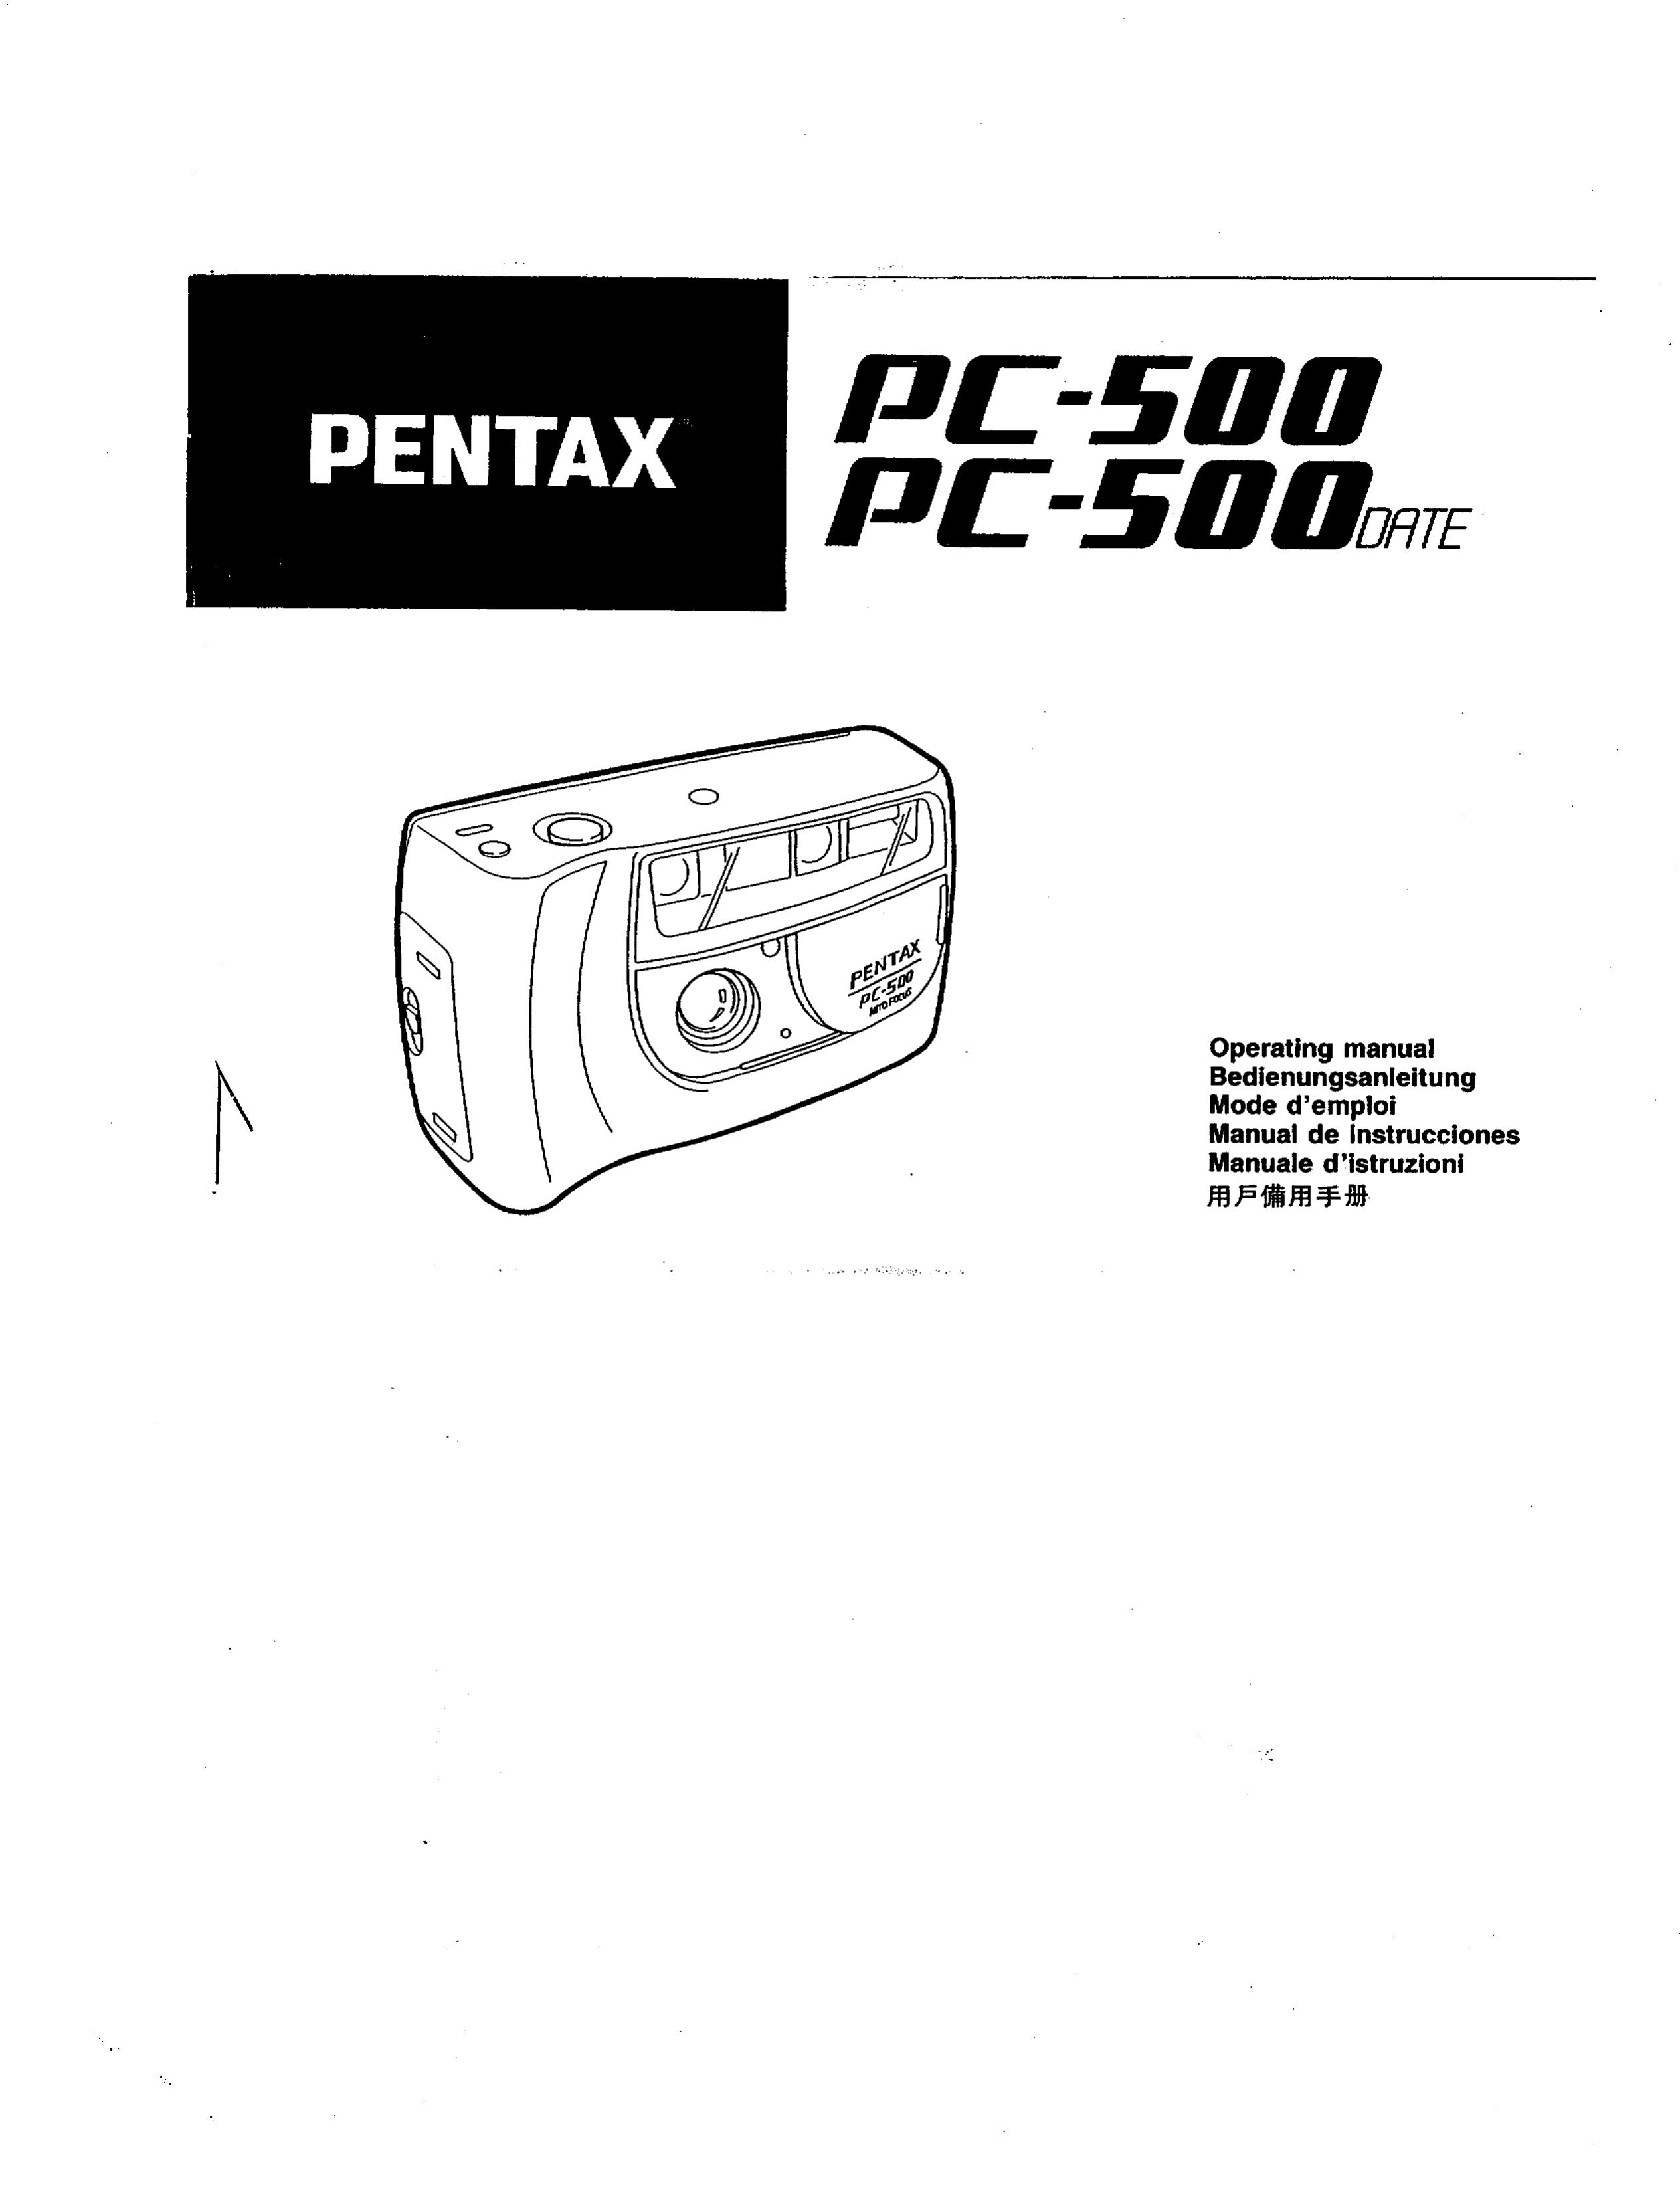 Pentax PC-500 Camcorder User Manual